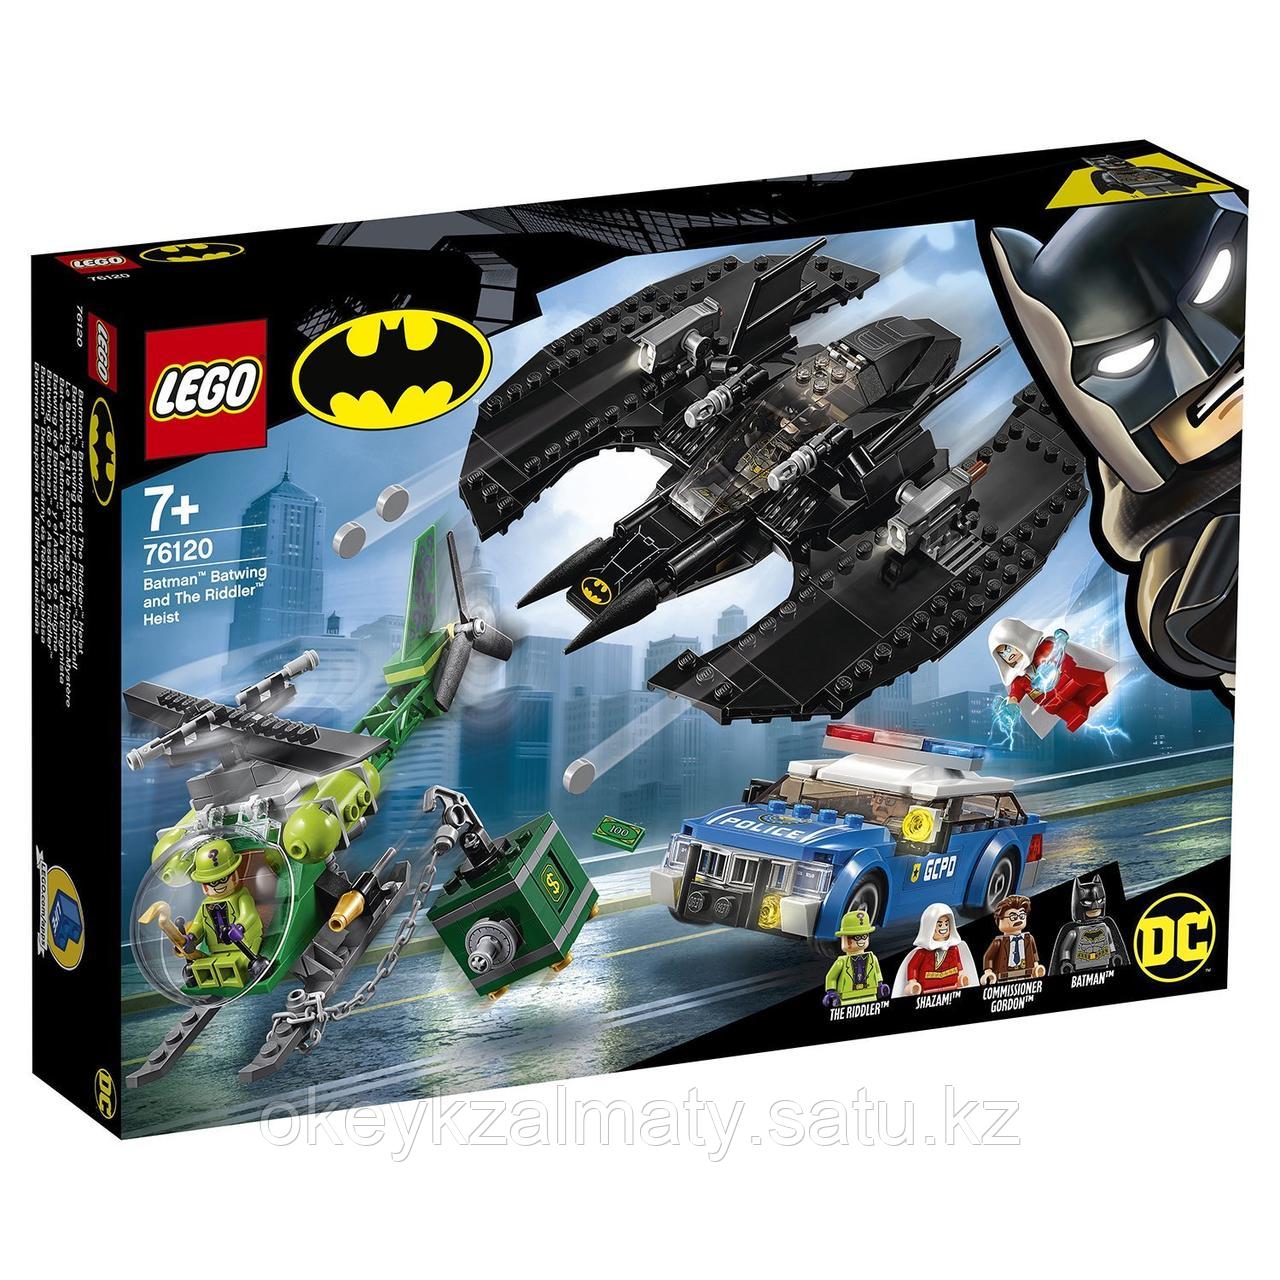 LEGO Super Heroes: Бэткрыло Бэтмена и ограбление Загадочника 76120